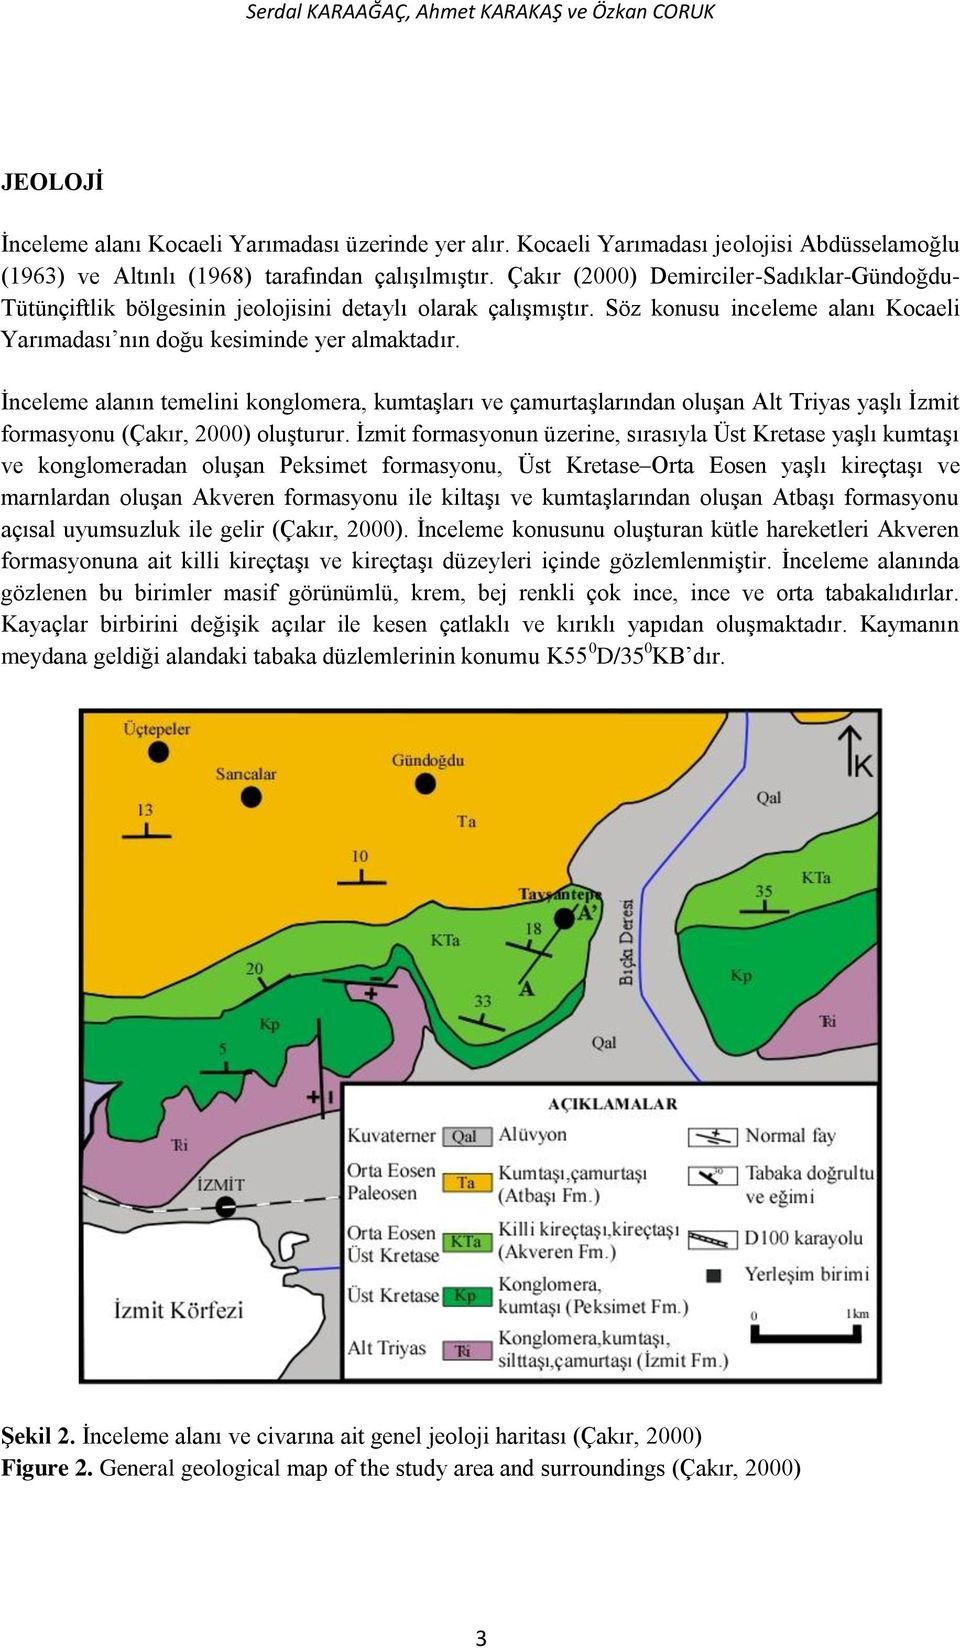 Çakır (2000) Demirciler-Sadıklar-Gündoğdu- Tütünçiftlik bölgesinin jeolojisini detaylı olarak çalışmıştır. Söz konusu inceleme alanı Kocaeli Yarımadası nın doğu kesiminde yer almaktadır.